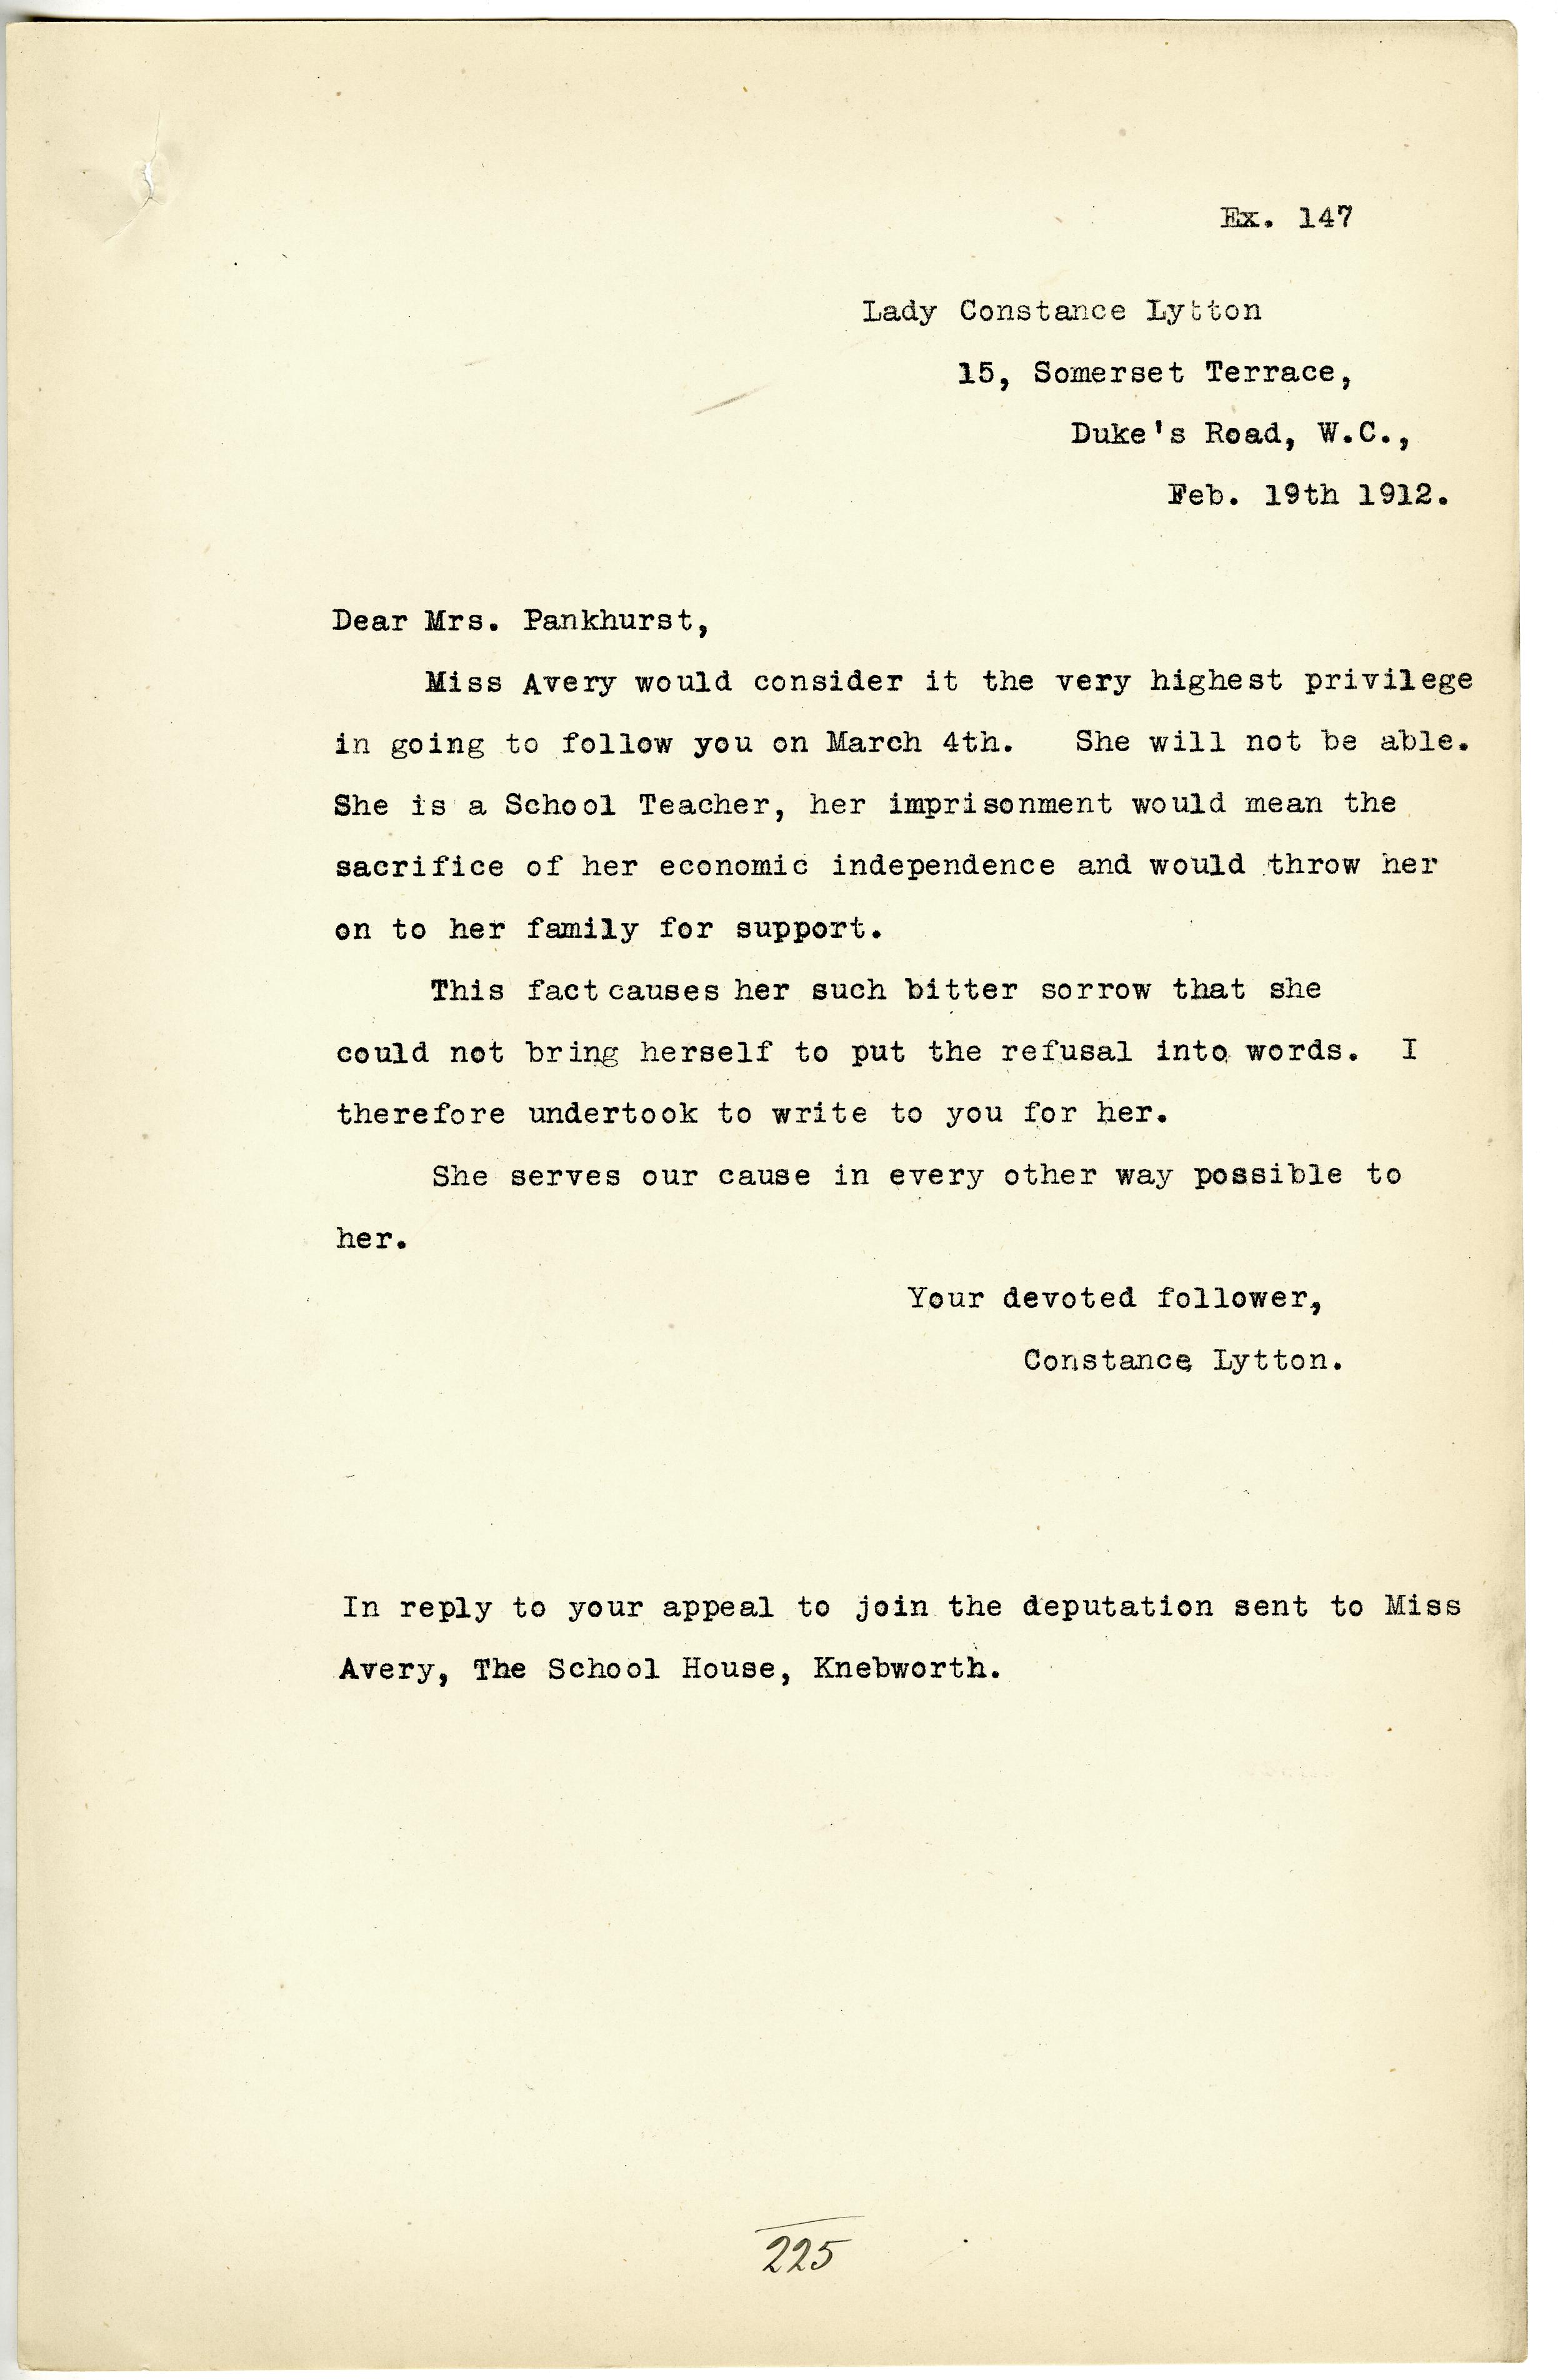 Letter from Lady Constance Lytton regarding schoolteacher 19 February 1912 DPP1/23 Ex147